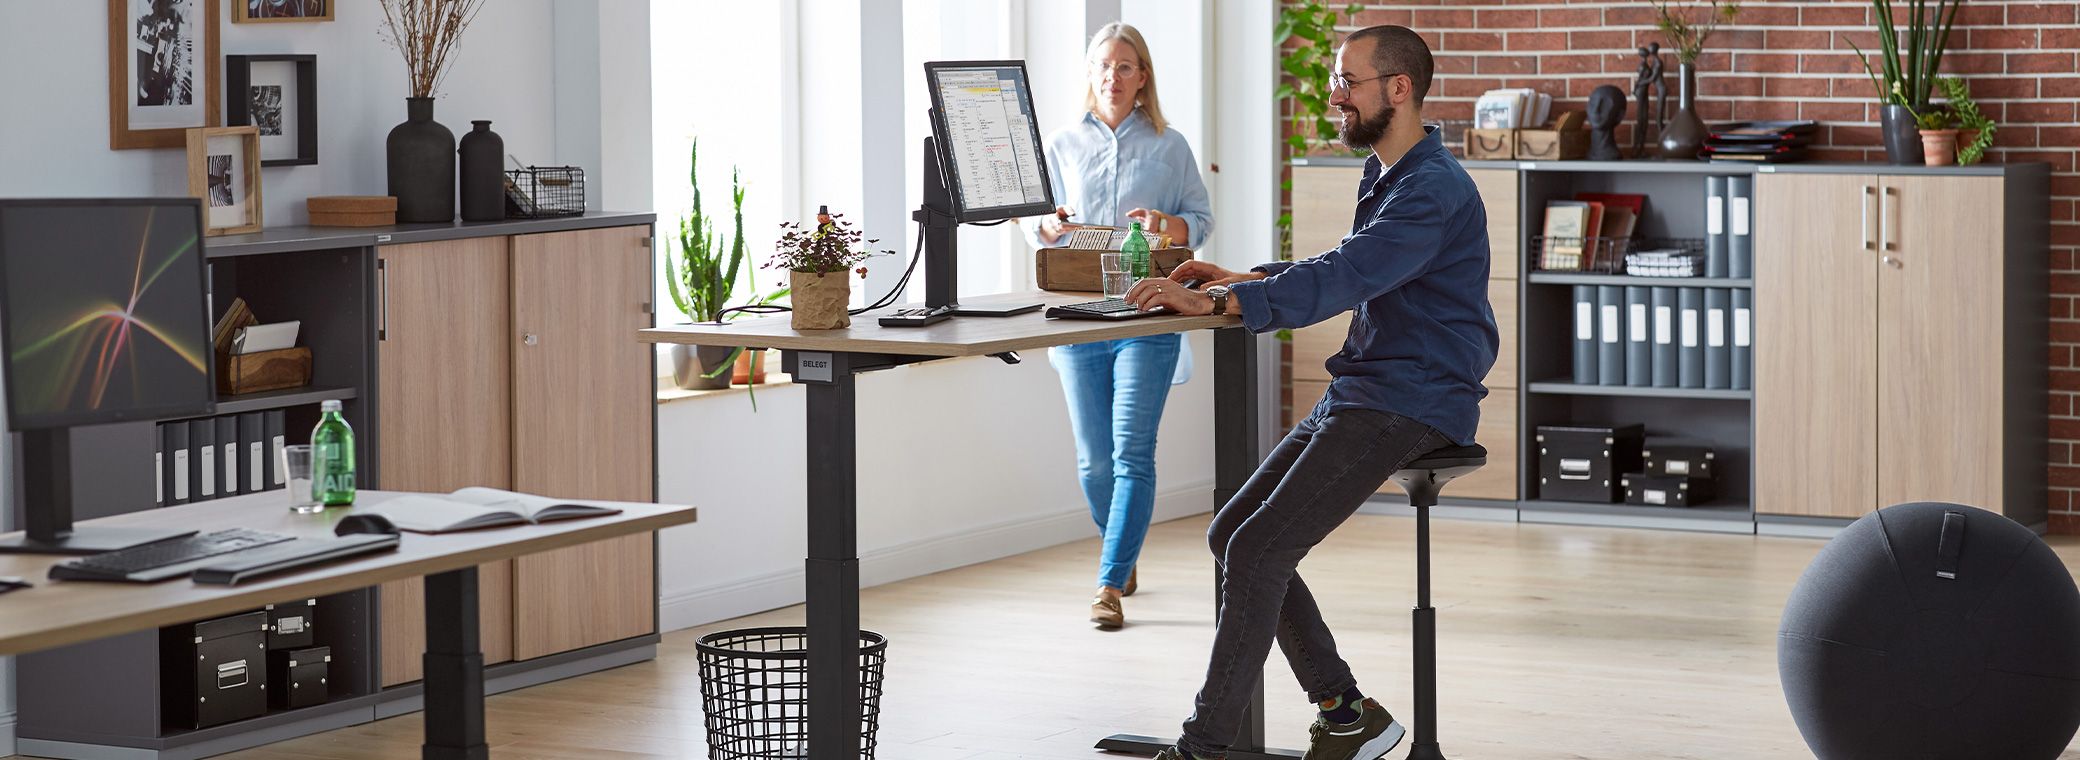 Zwei Kollegen arbeiten mit ergonomischen Möbeln gemeinsam im Büro